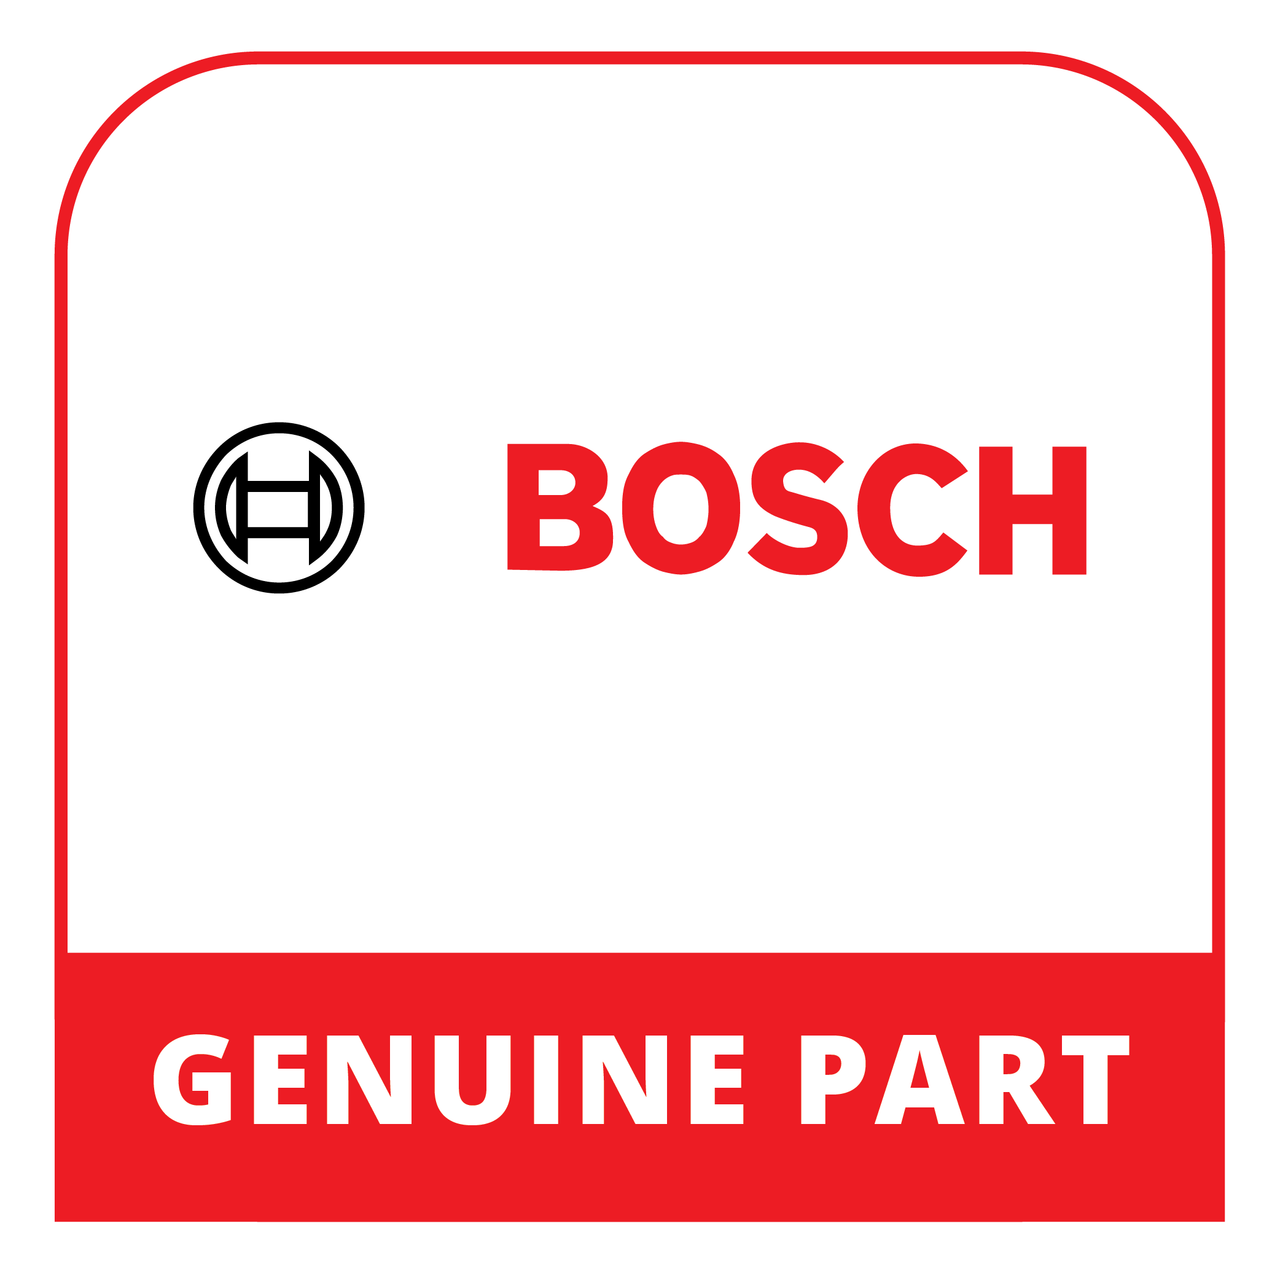 Bosch (Thermador) 20005660 - Door - Genuine Bosch (Thermador) Part